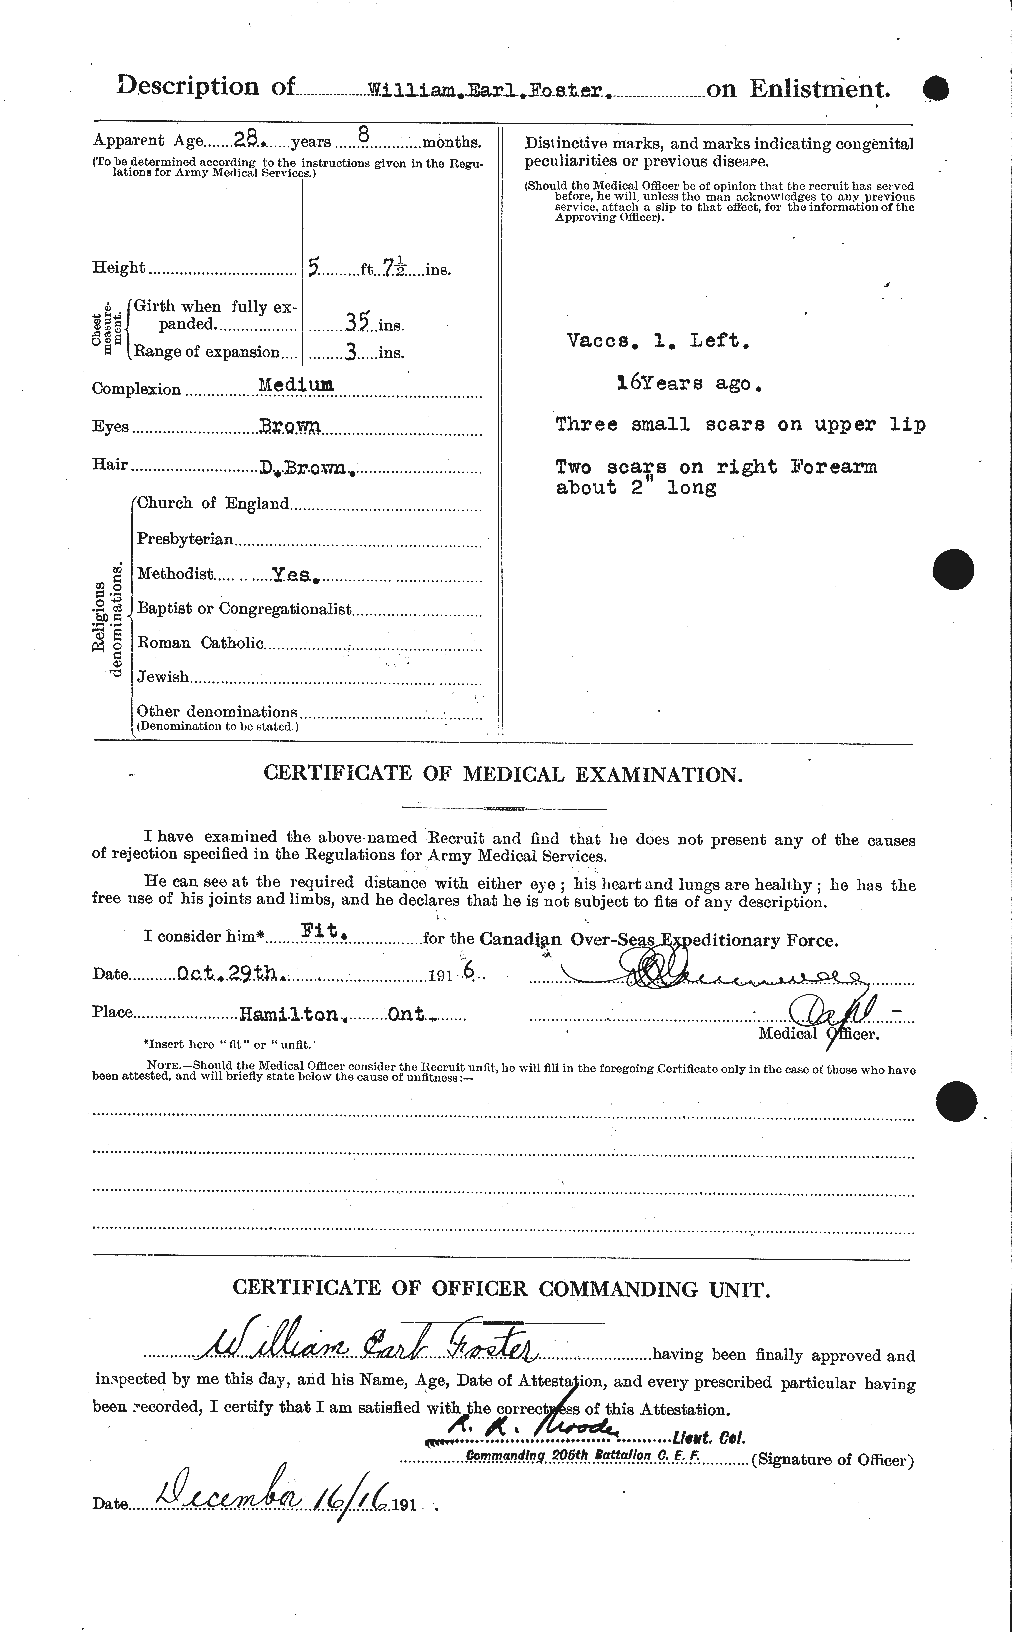 Dossiers du Personnel de la Première Guerre mondiale - CEC 328736b